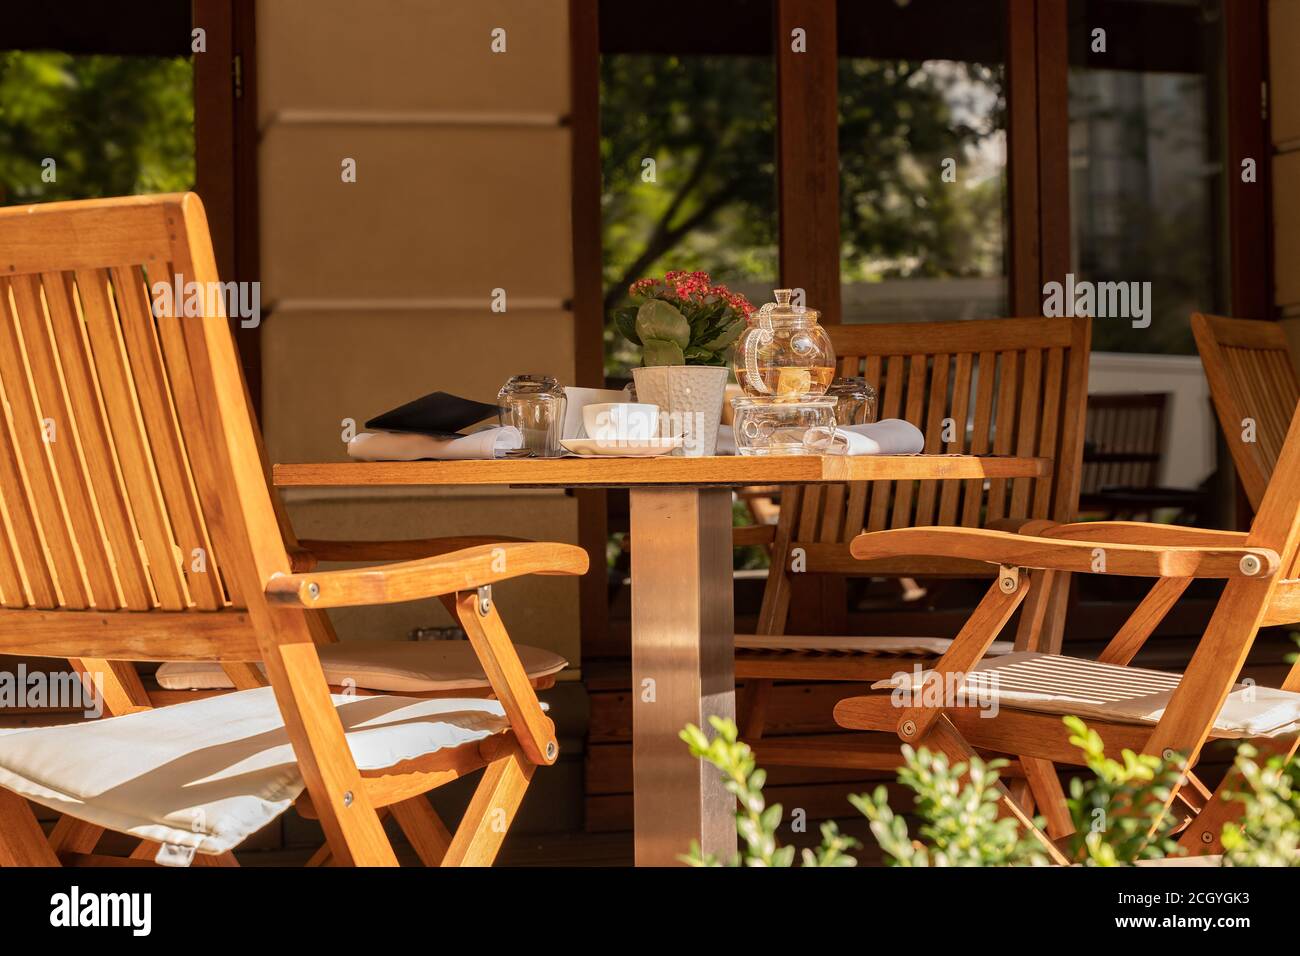 Leere Stühle und Teegeschirr auf dem Tisch eines offenen Cafés oder Restaurants an einem sonnigen Sommertag. Stockfoto